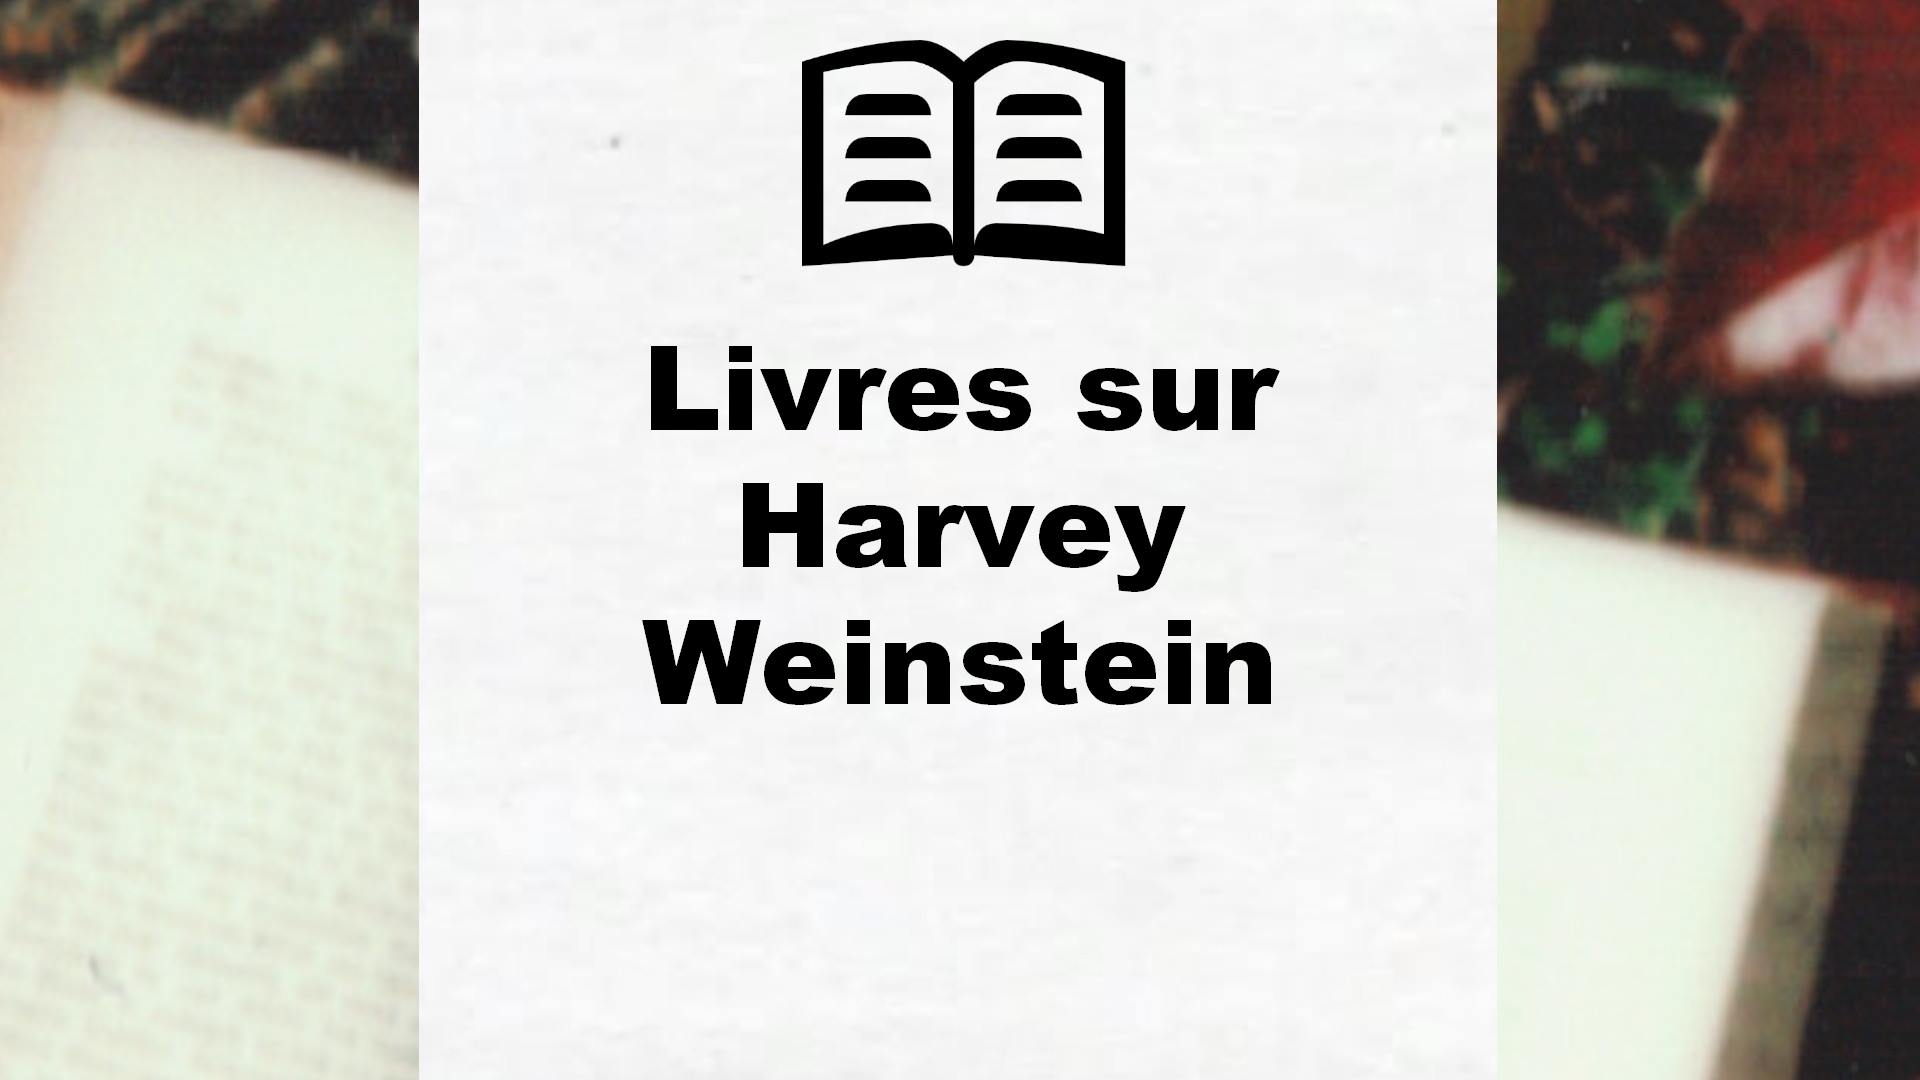 Livres sur Harvey Weinstein